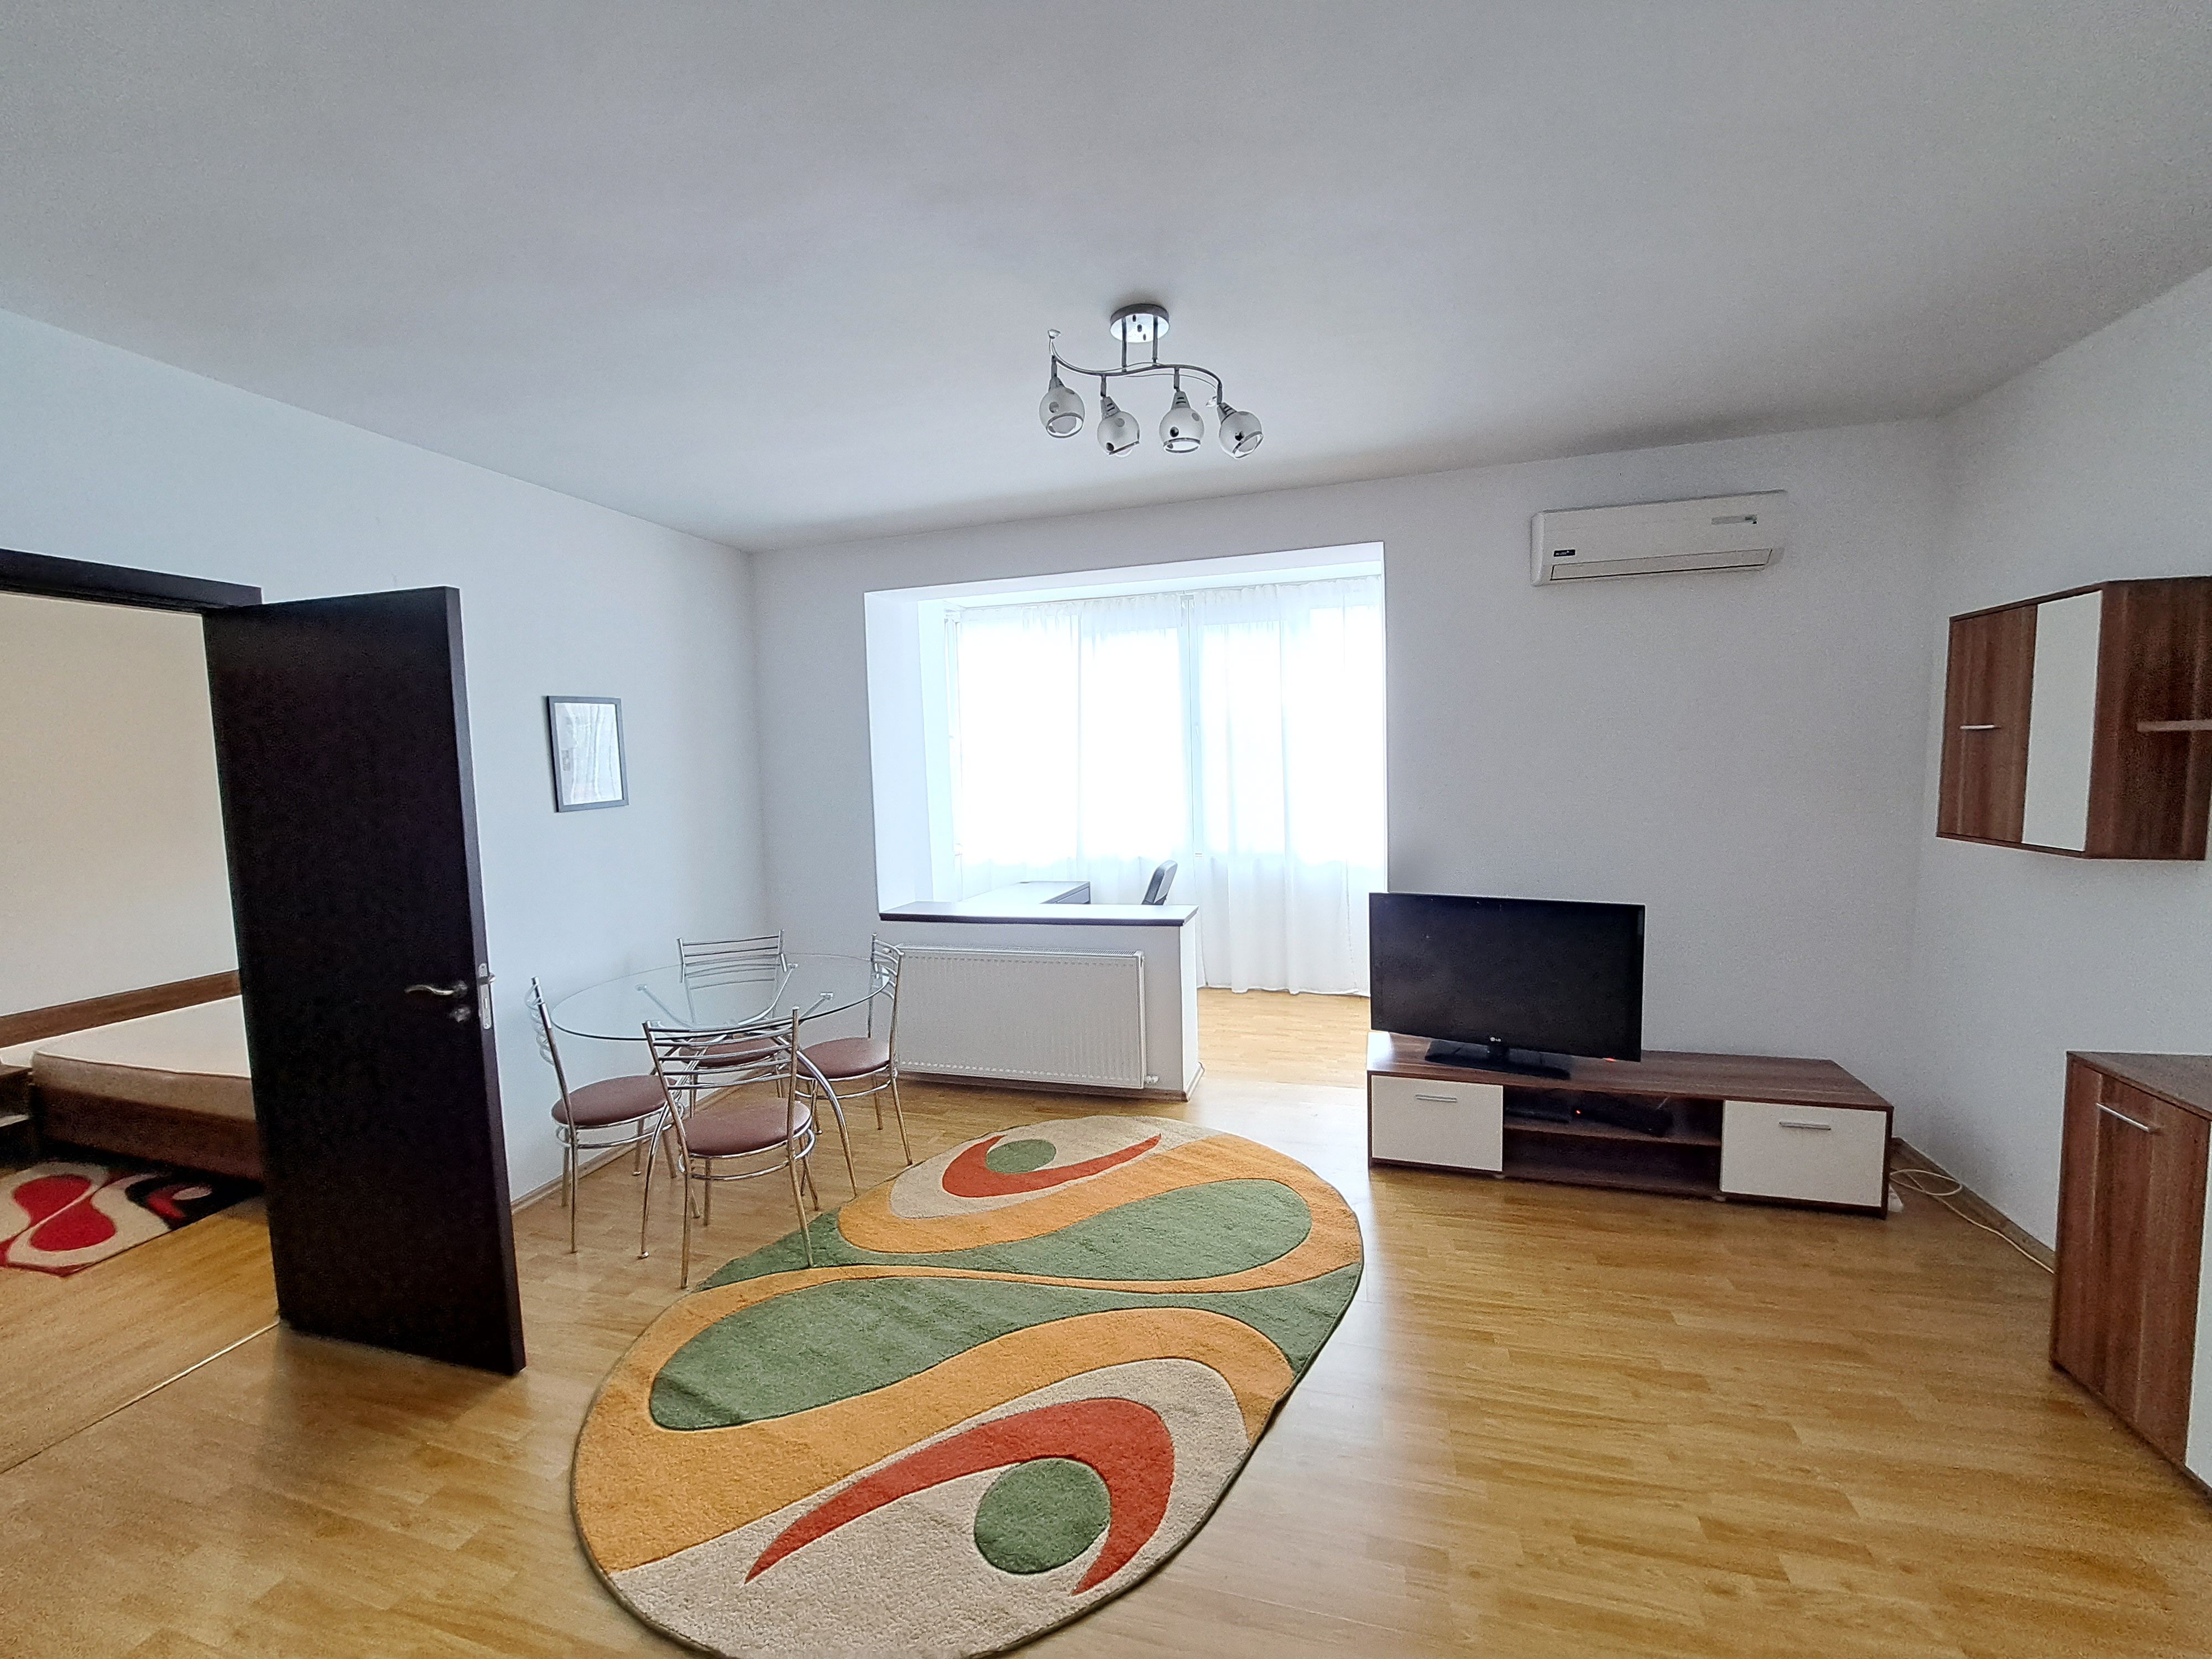 Apartament cu 2 camere 55,54 mp in zona Romana